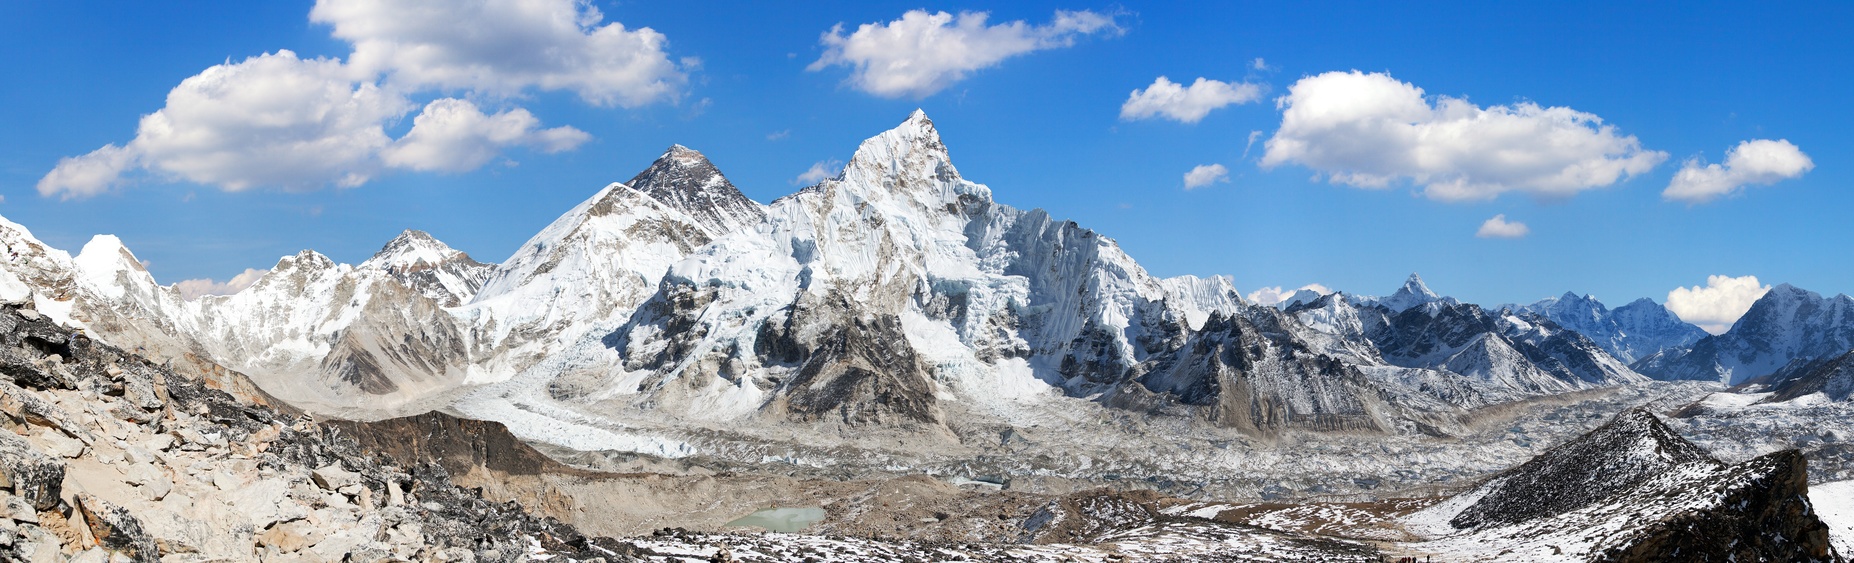 Vue sur l'Everest depuis le Kala Patthar, vallée du Khumbu, Népal